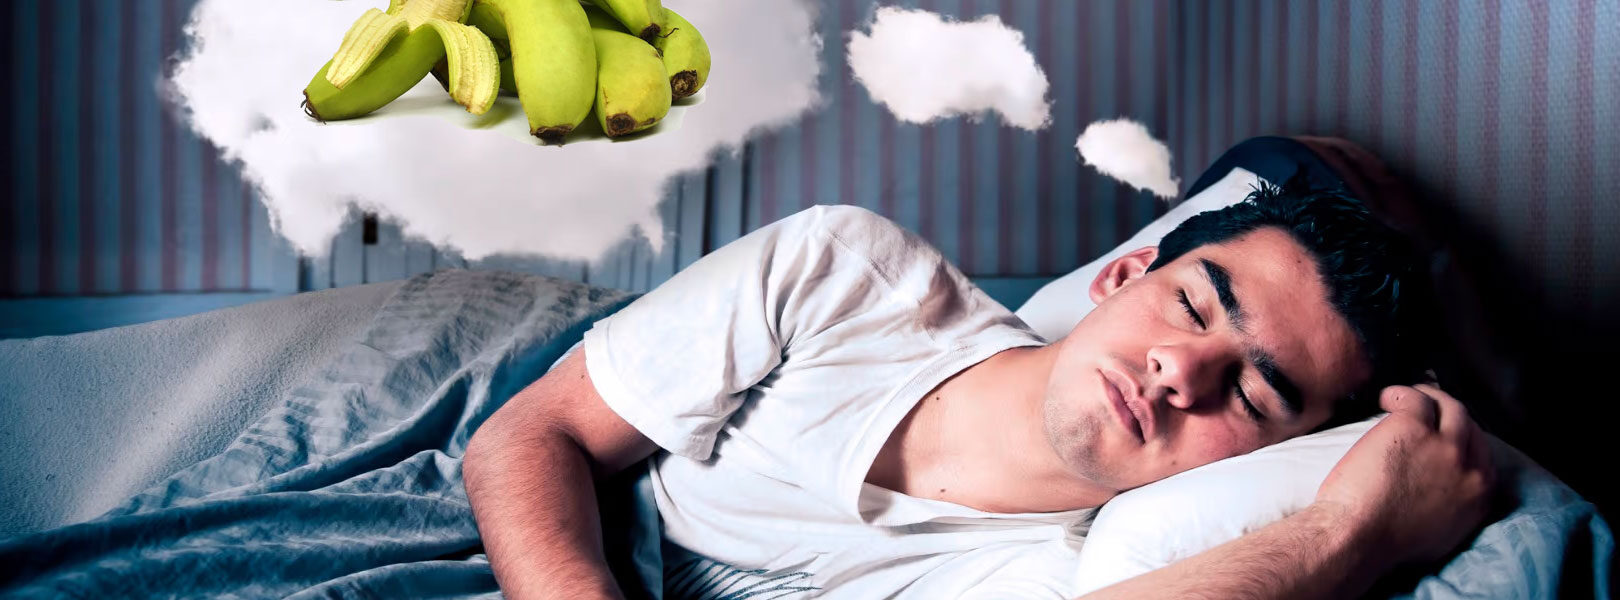 homem sonhando com banana verde